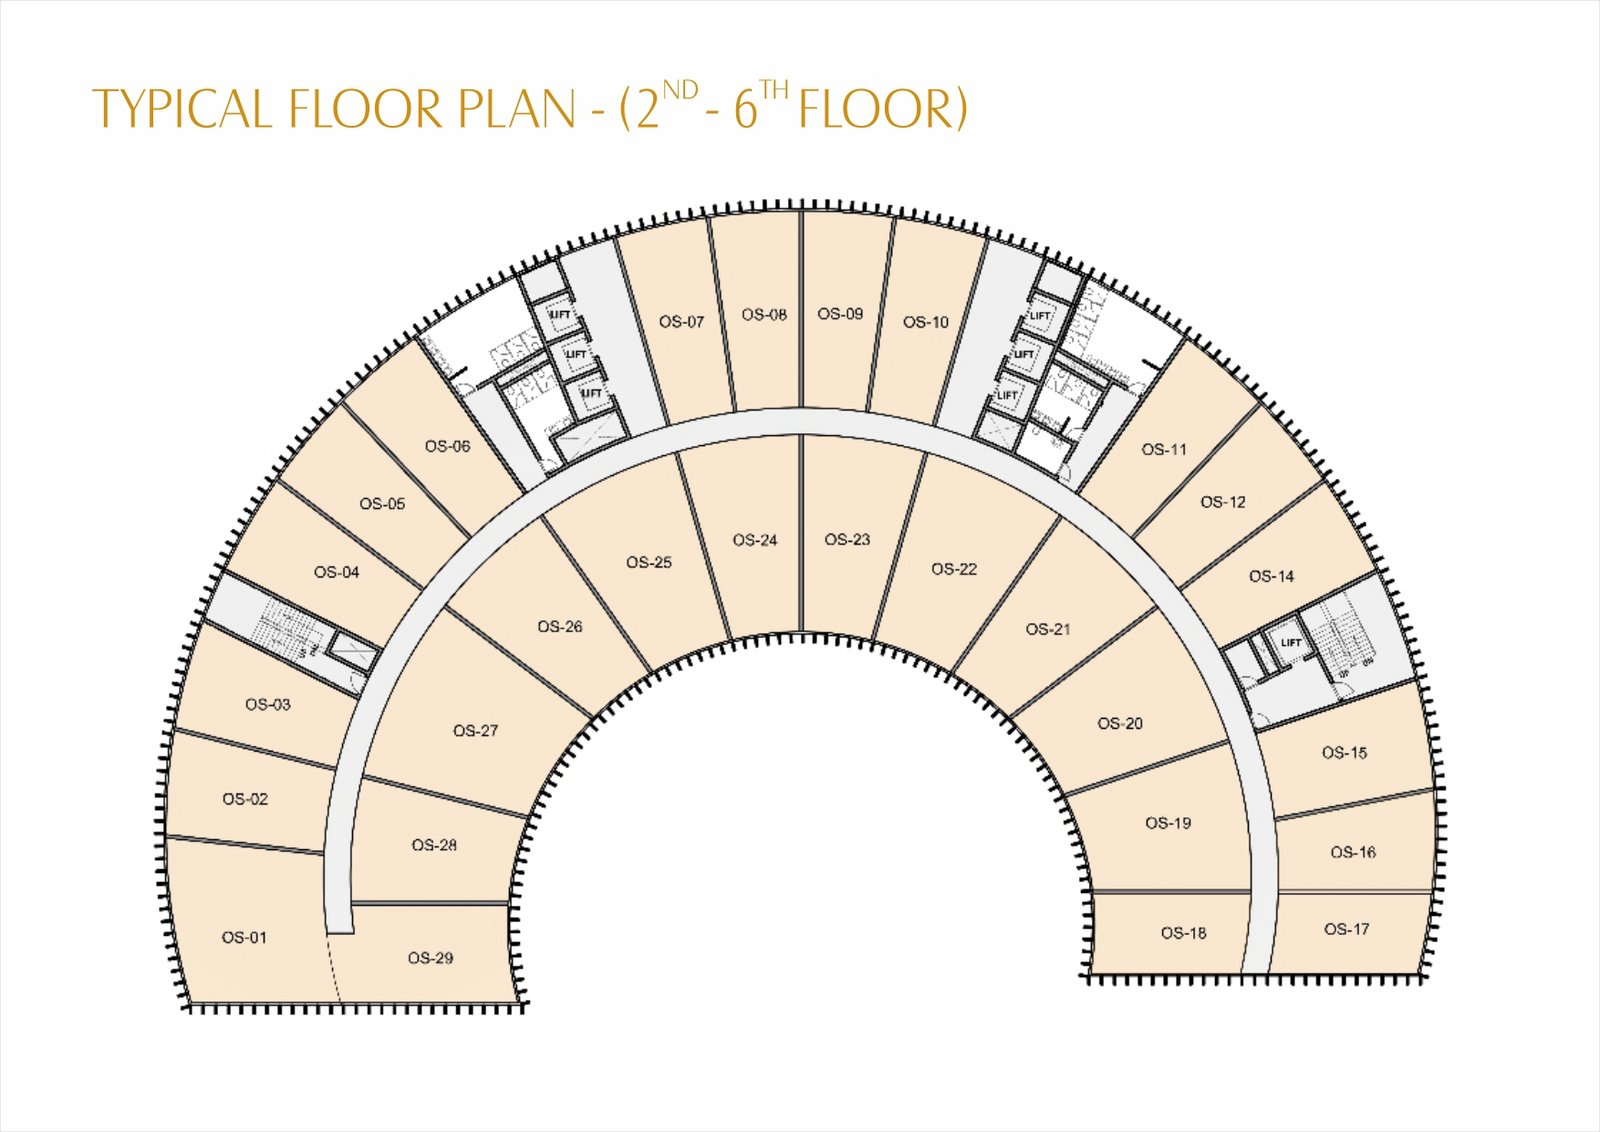 floor_plan.png